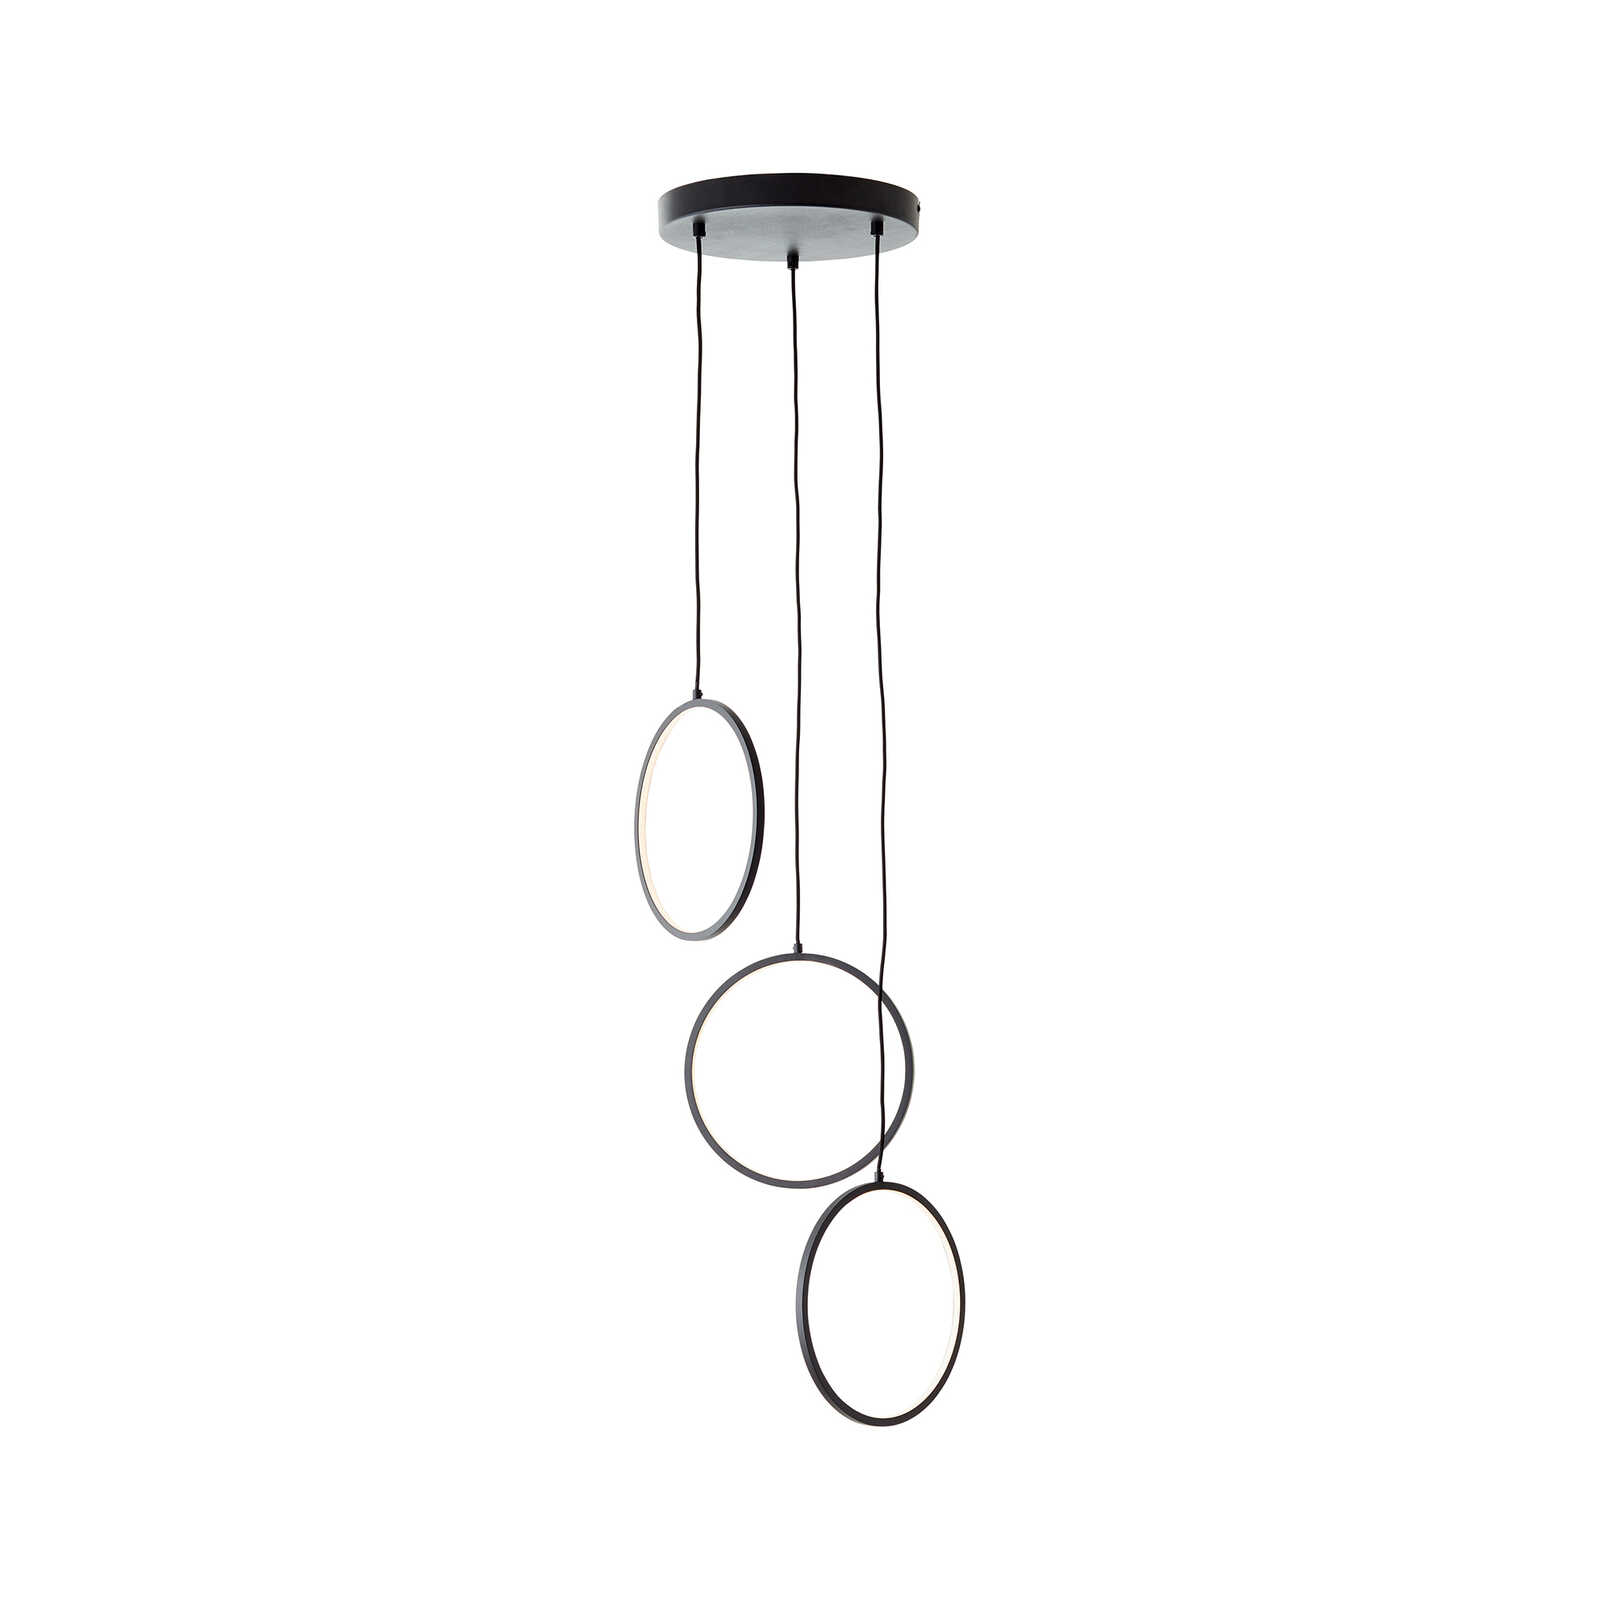 Metalen hanglamp - Elea 4 - Zwart
